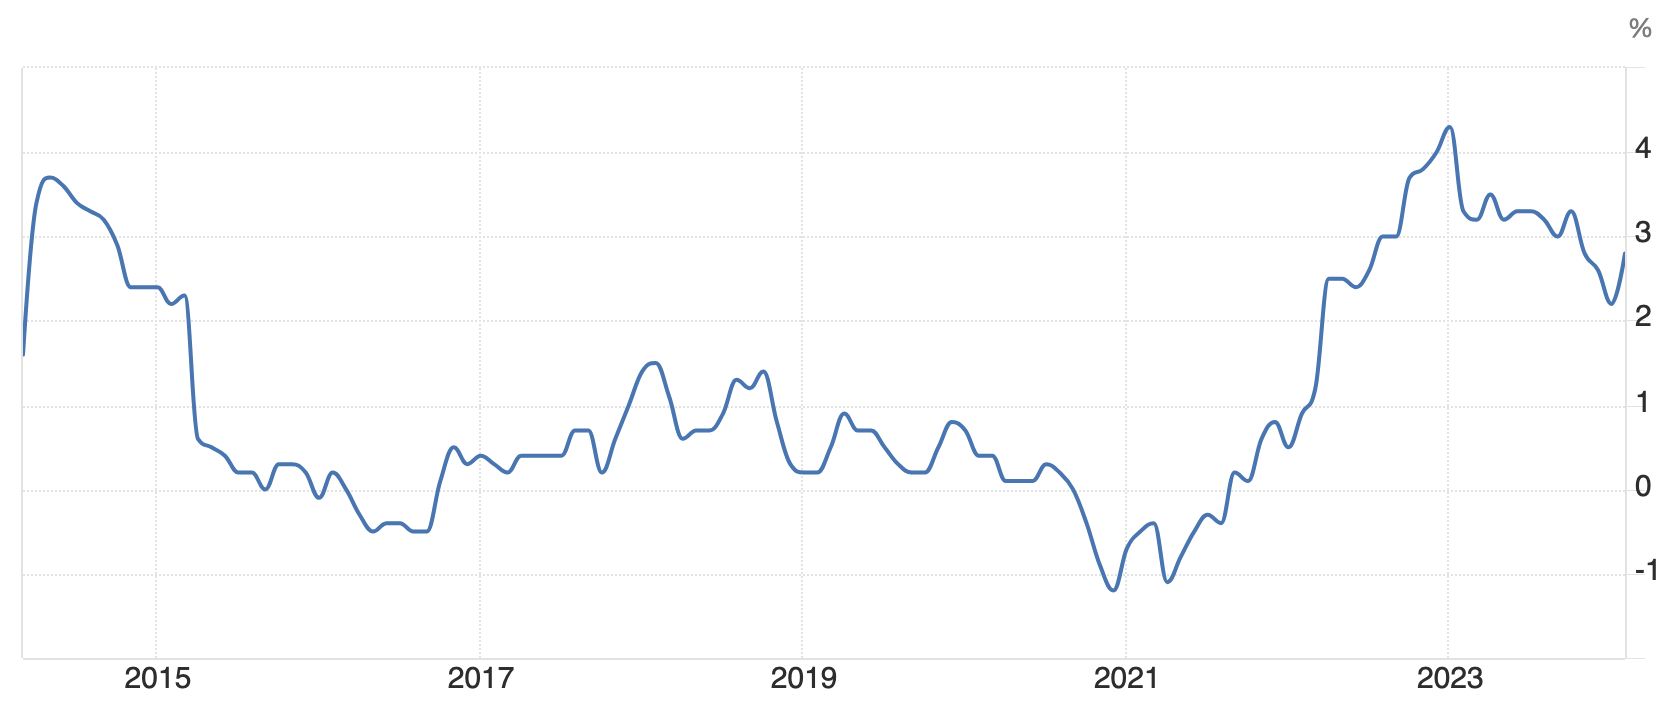 日本のインフレ率の推移